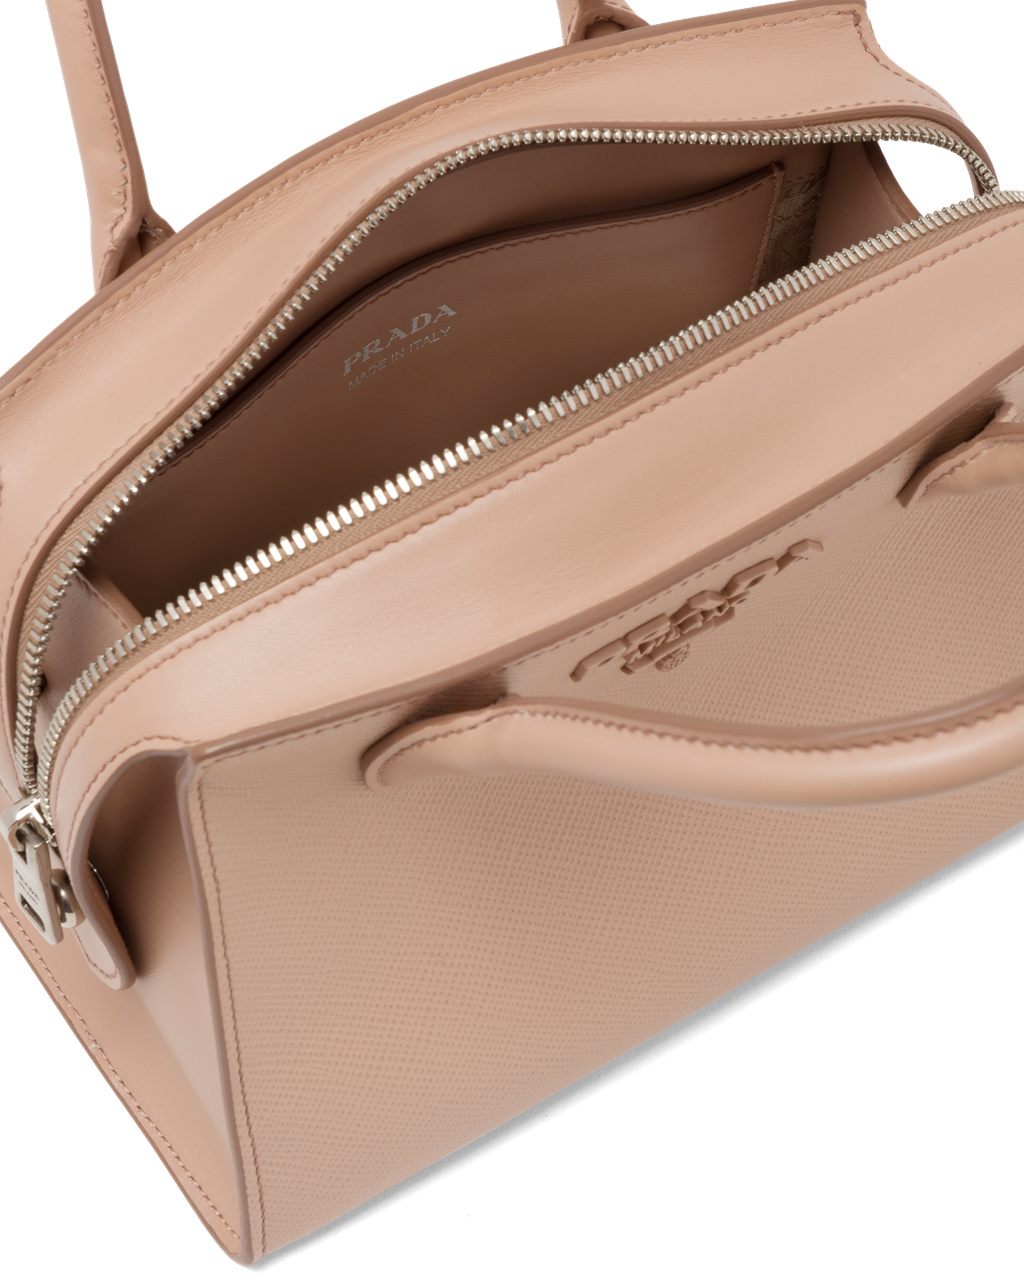 Prada Top Handles Store South Africa - Saffiano Leather Prada Monochrome Bag  Womens Powder Pink